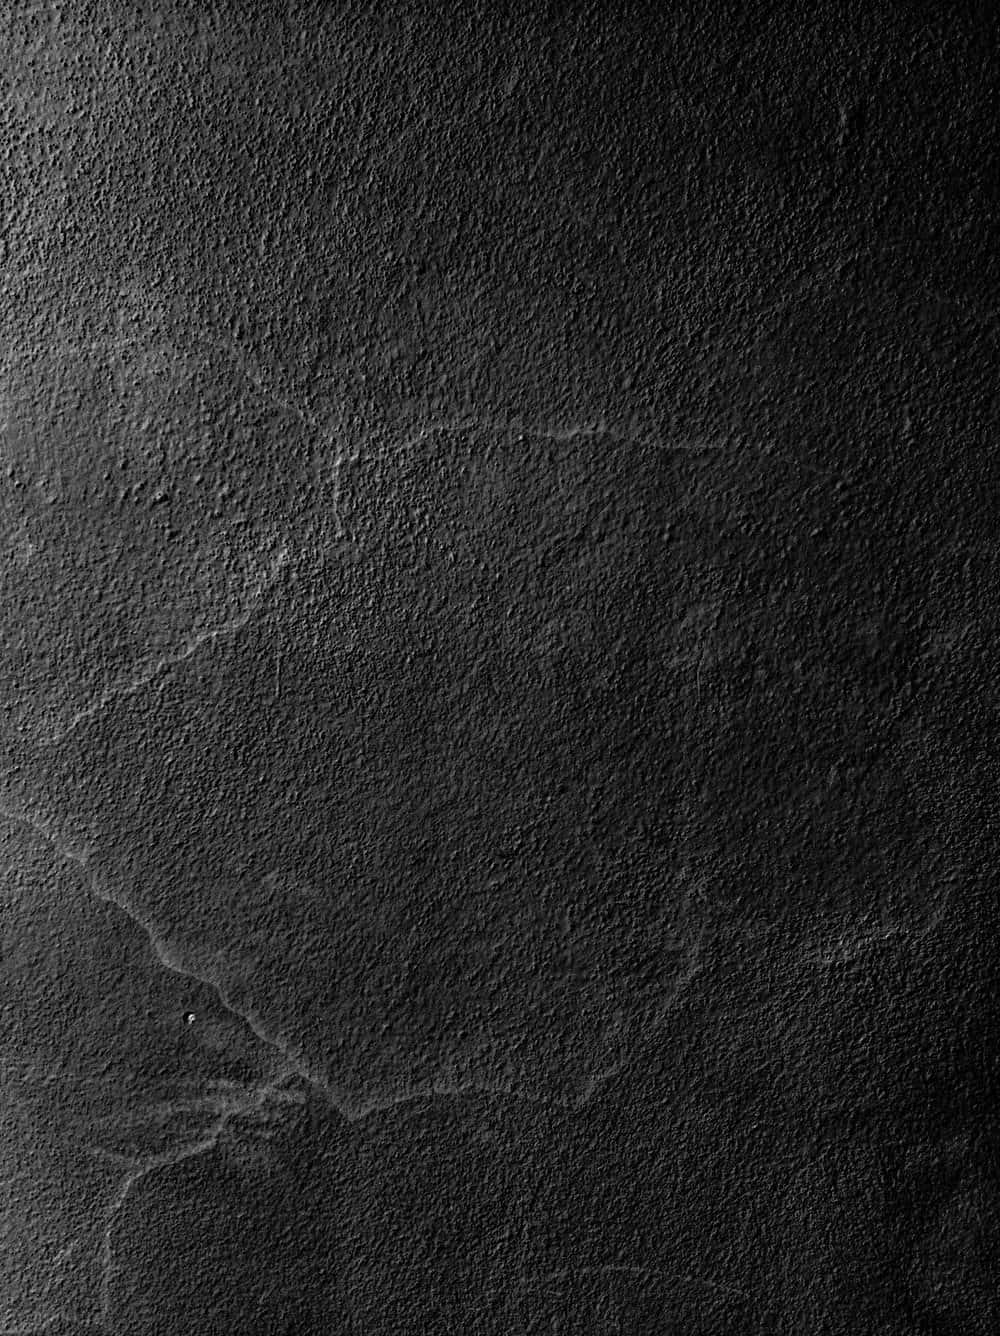 Immaginedi Texture Di Cemento Nero In Pelle